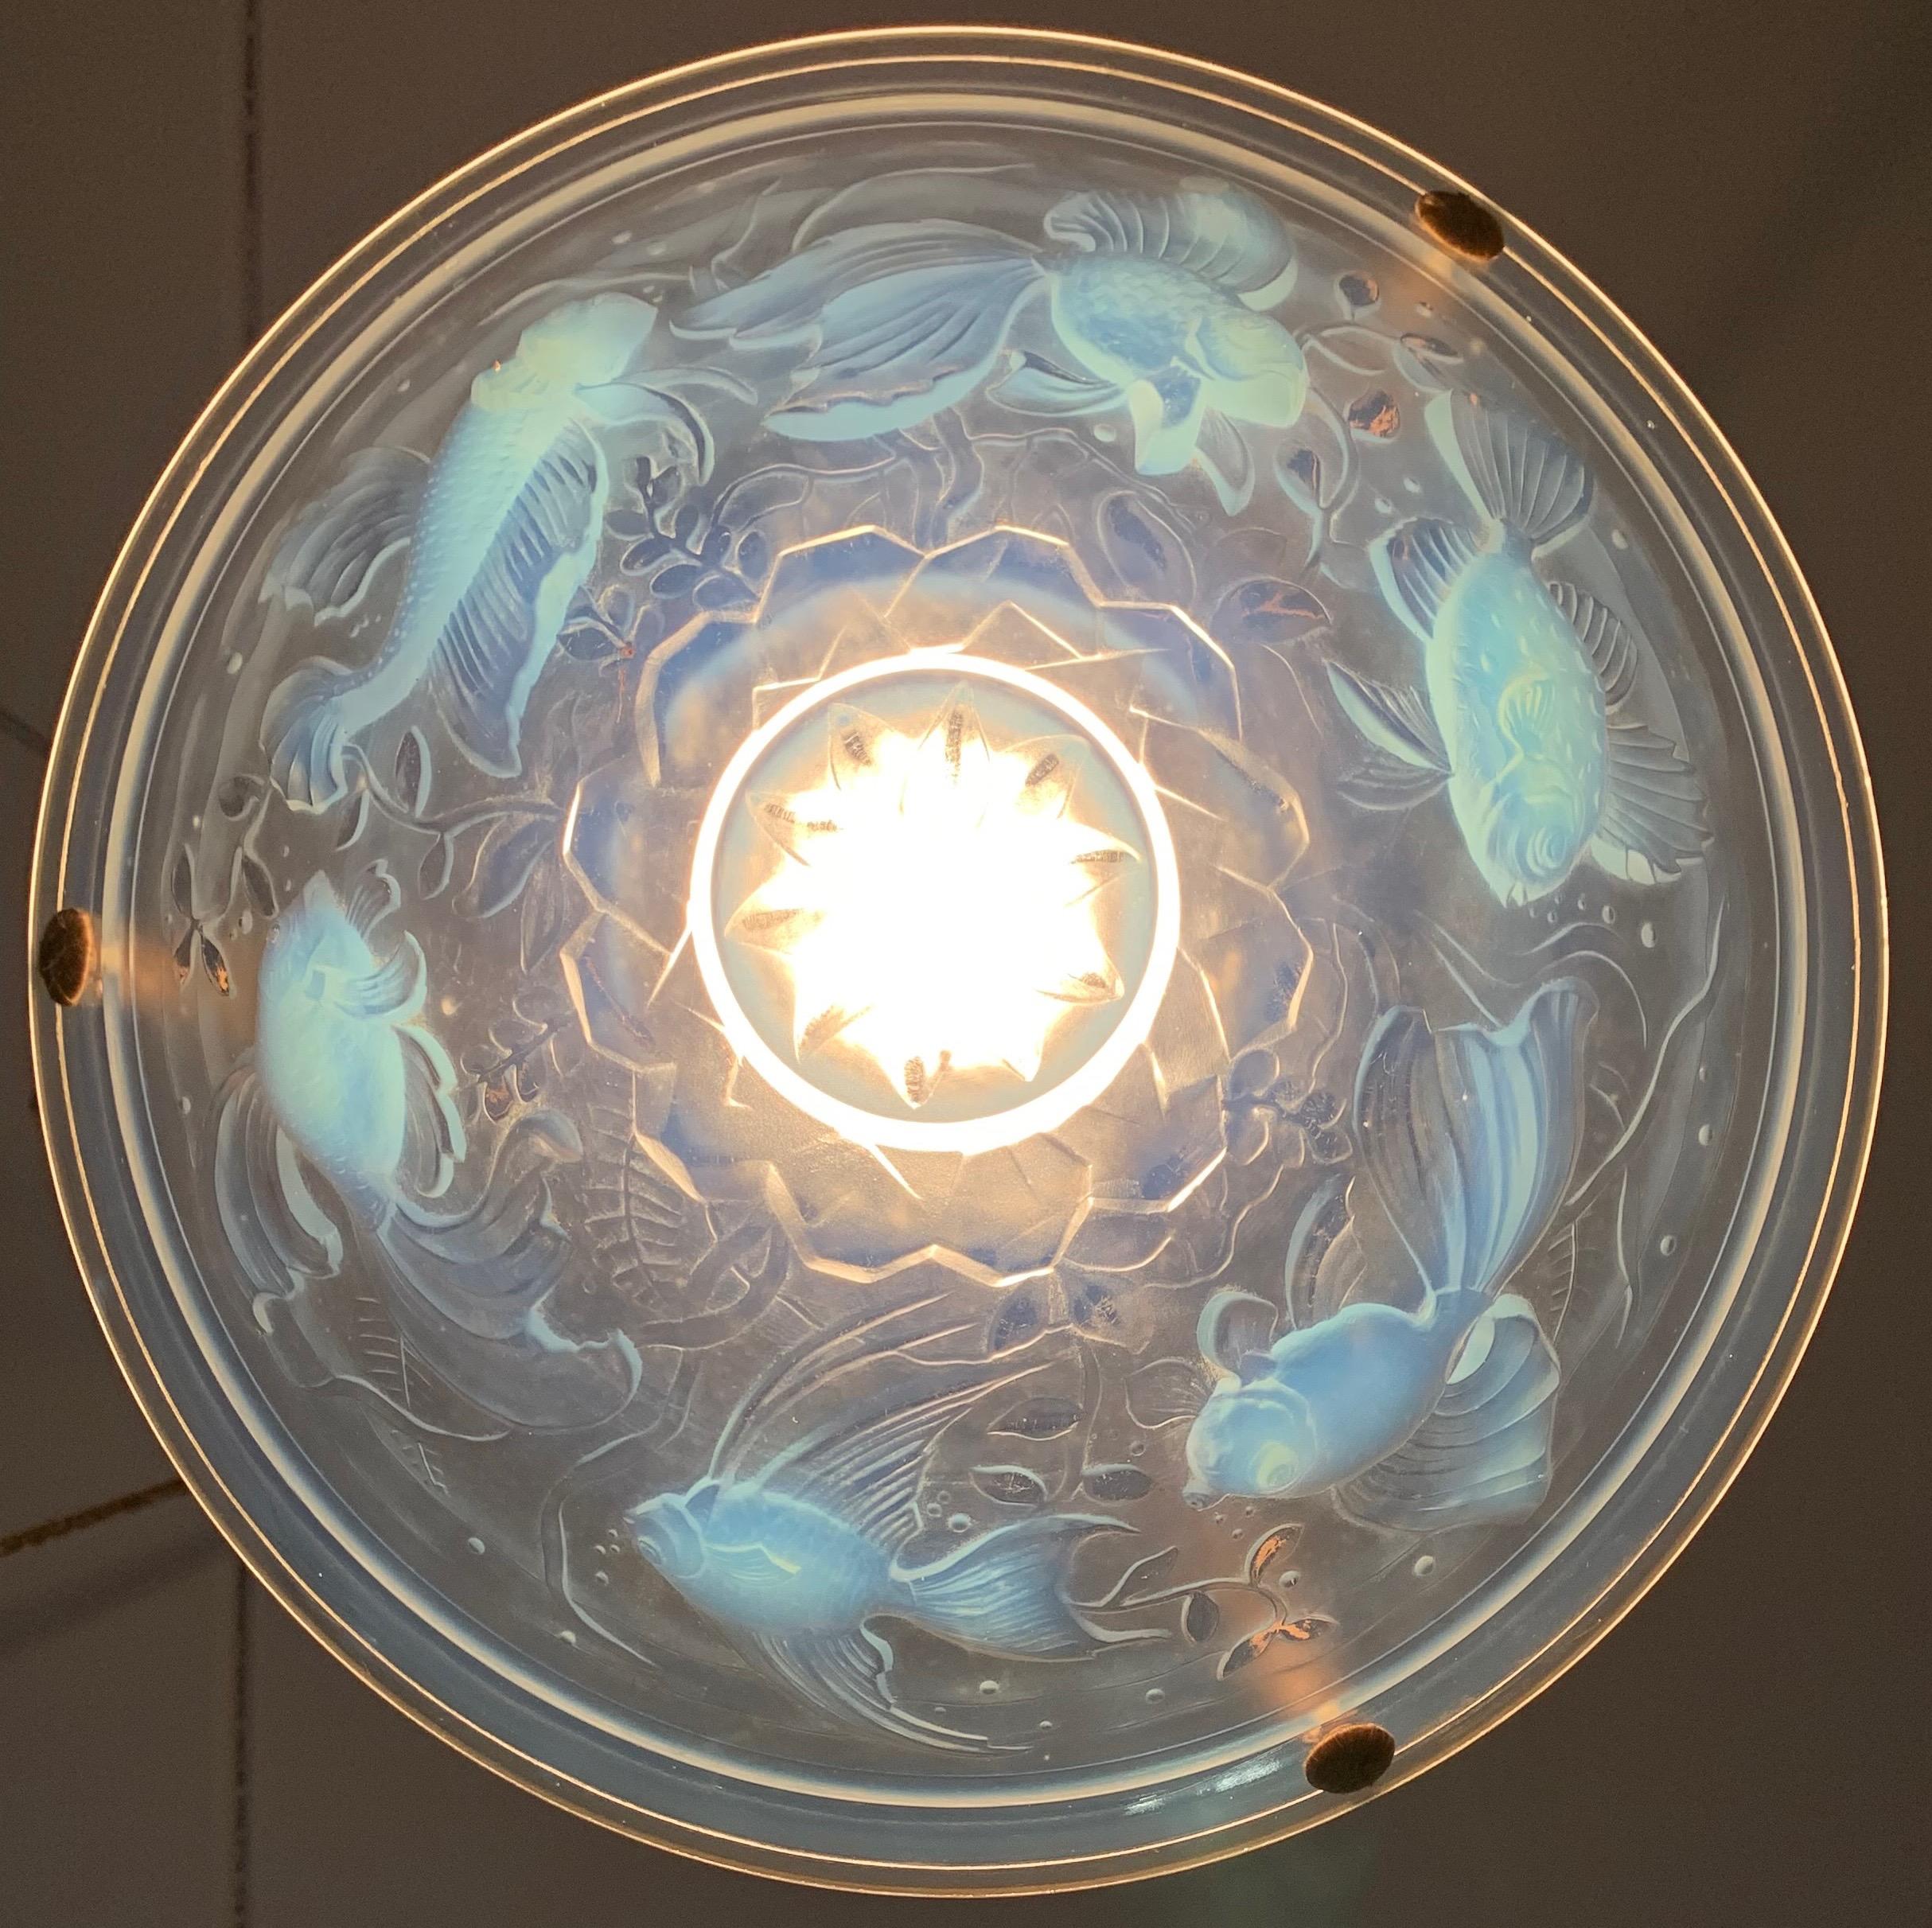 Delightful Art Deco Pendant Light with René Lalique Style Glass Fish Sculptures 3